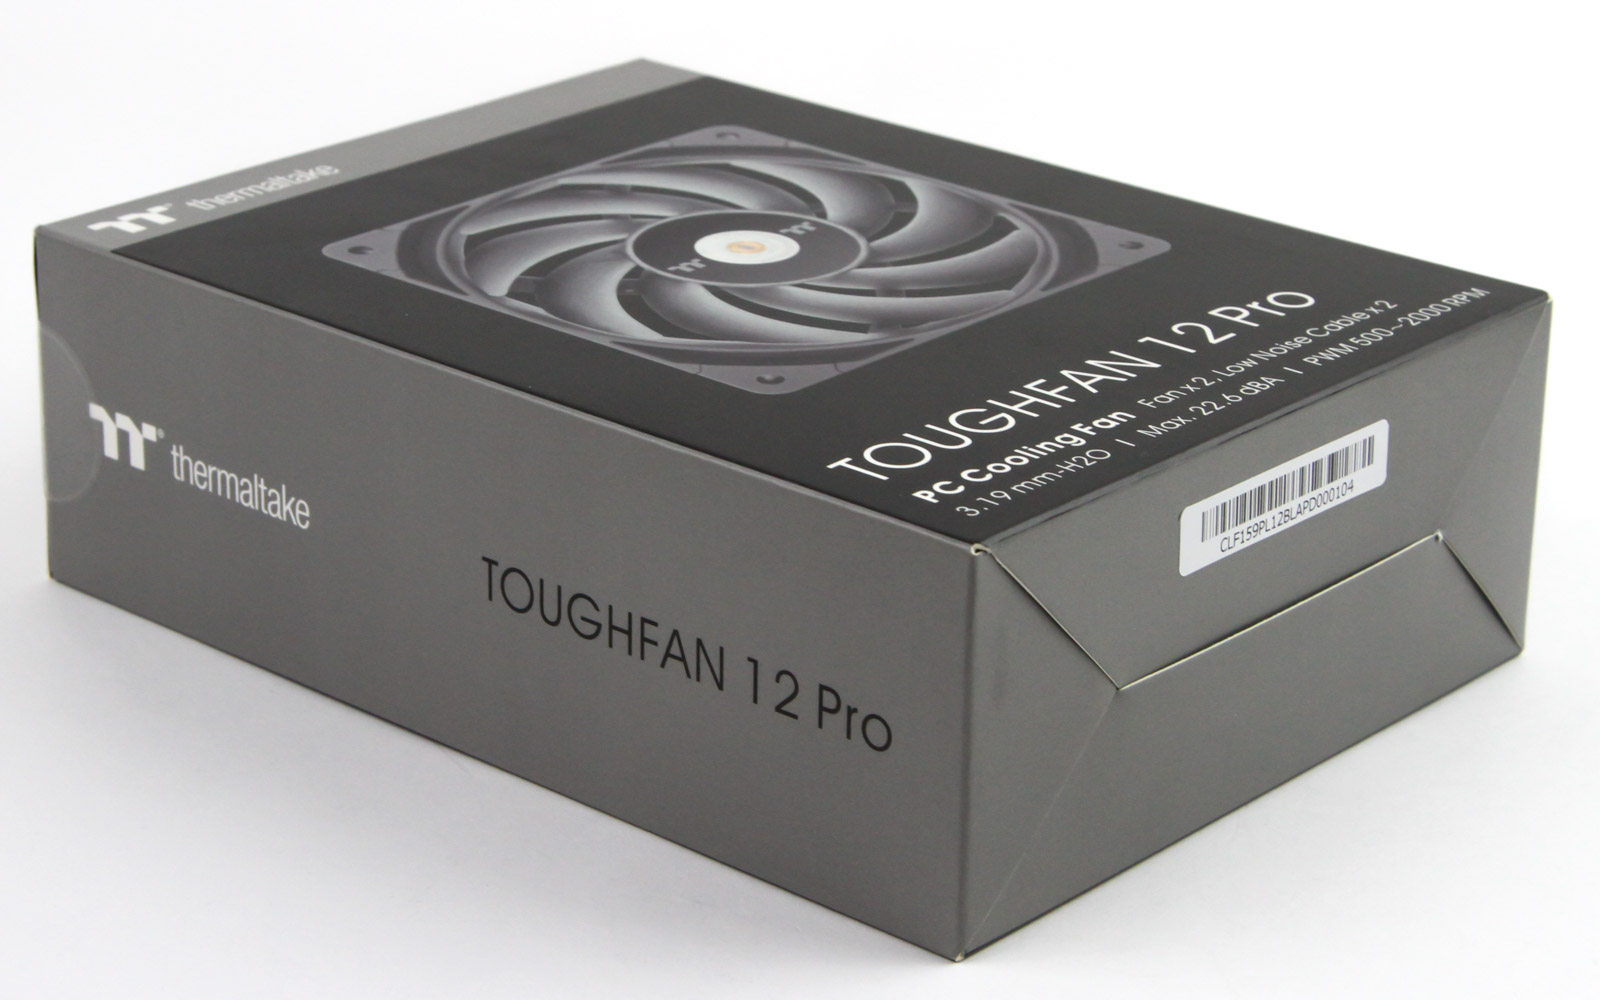 Thermaltake TOUGHFAN 12 Pro 120 mm Fan Review - Packaging